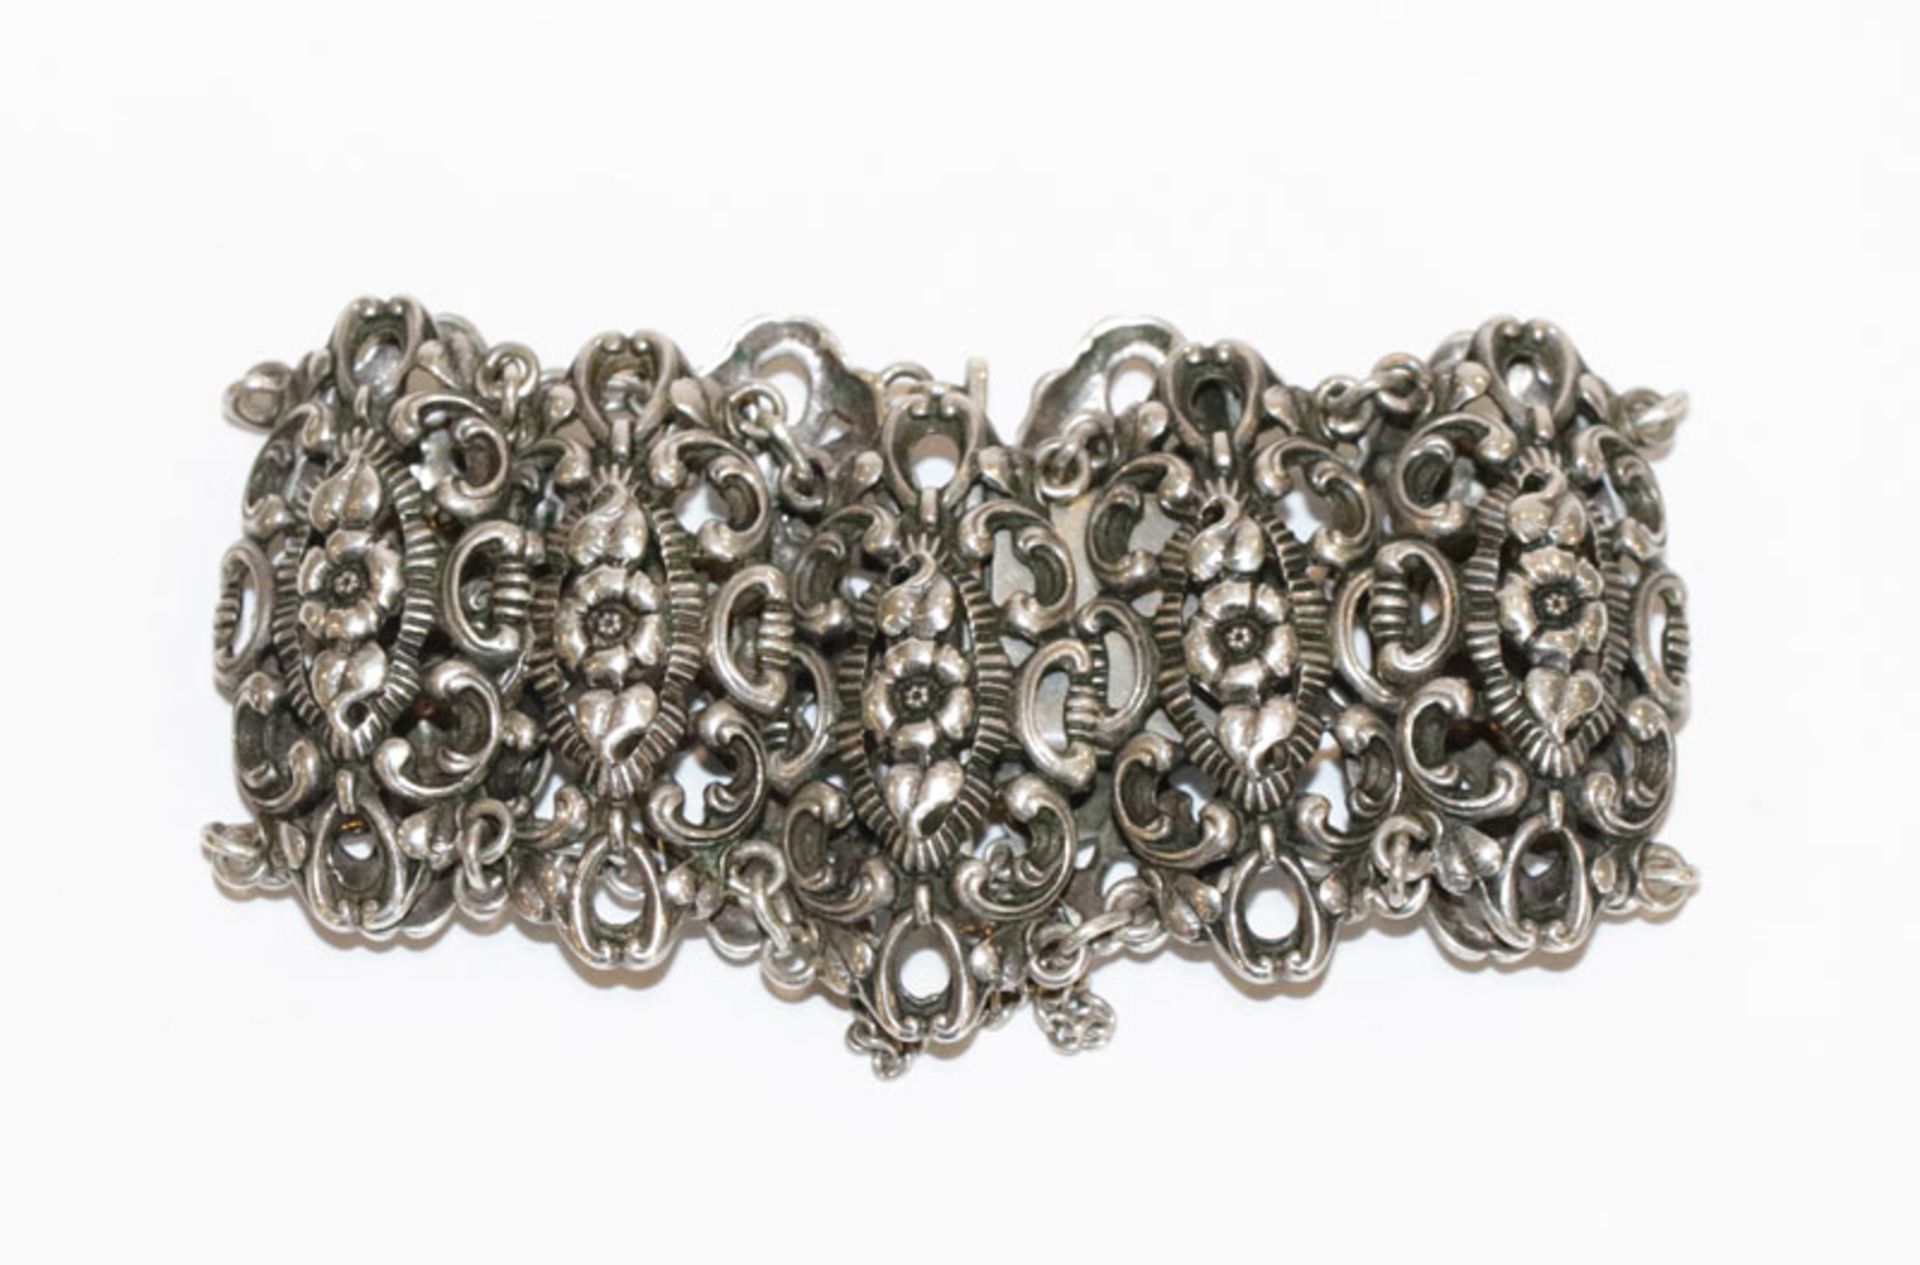 Trachten-Armband mit reliefiertem Floraldekor, 835 Silber, 41 gr., L 17 cm